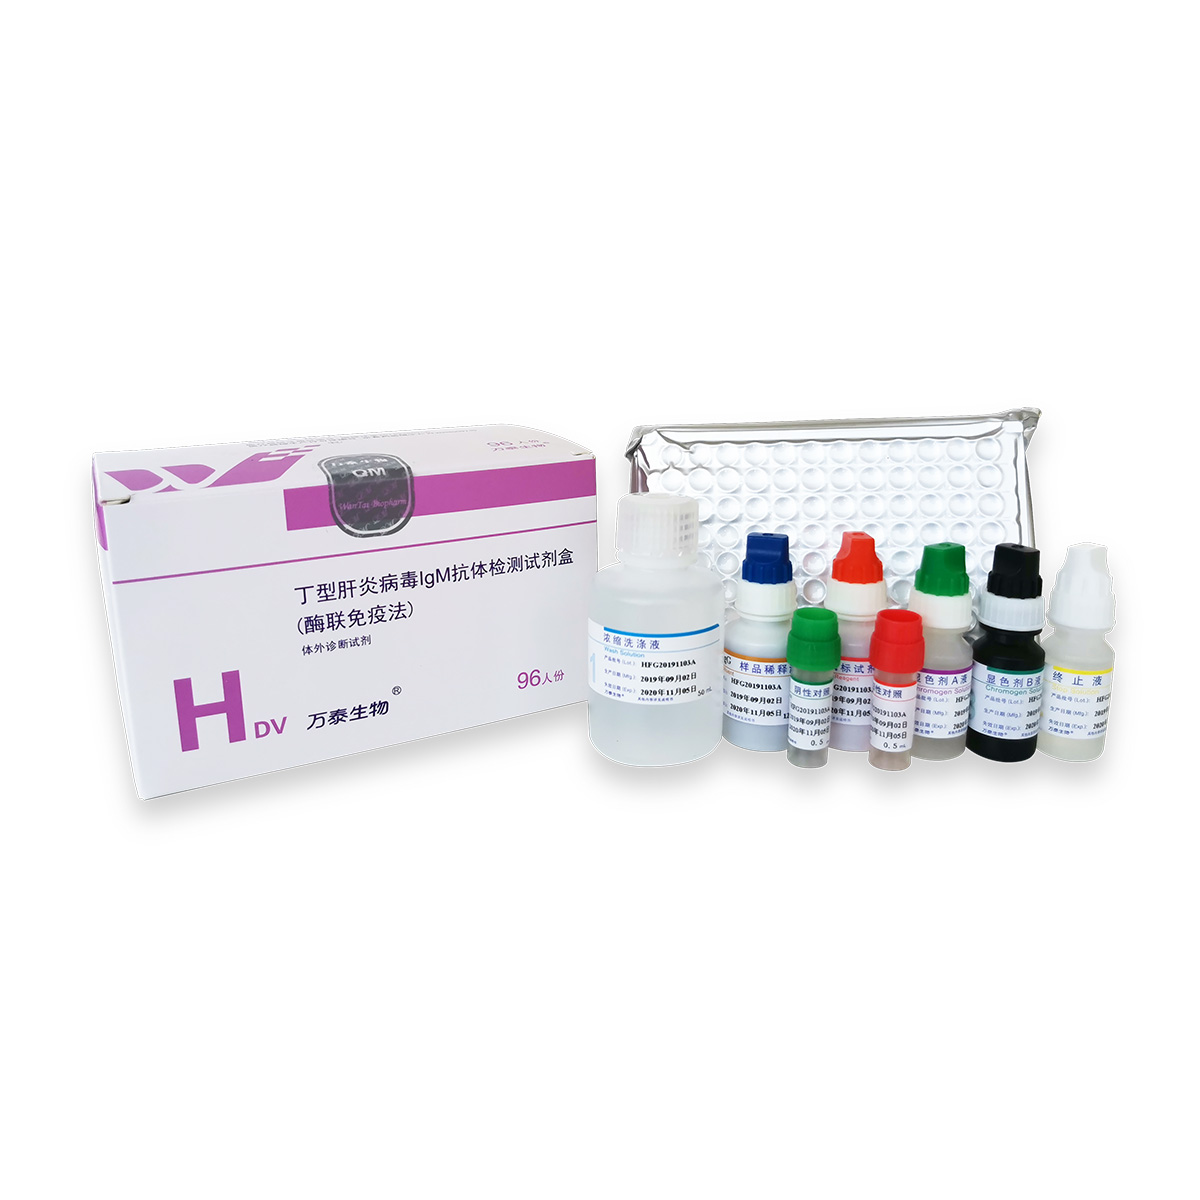 【万泰】丁型肝炎病毒IgM抗体检测试剂盒(酶联免疫法)